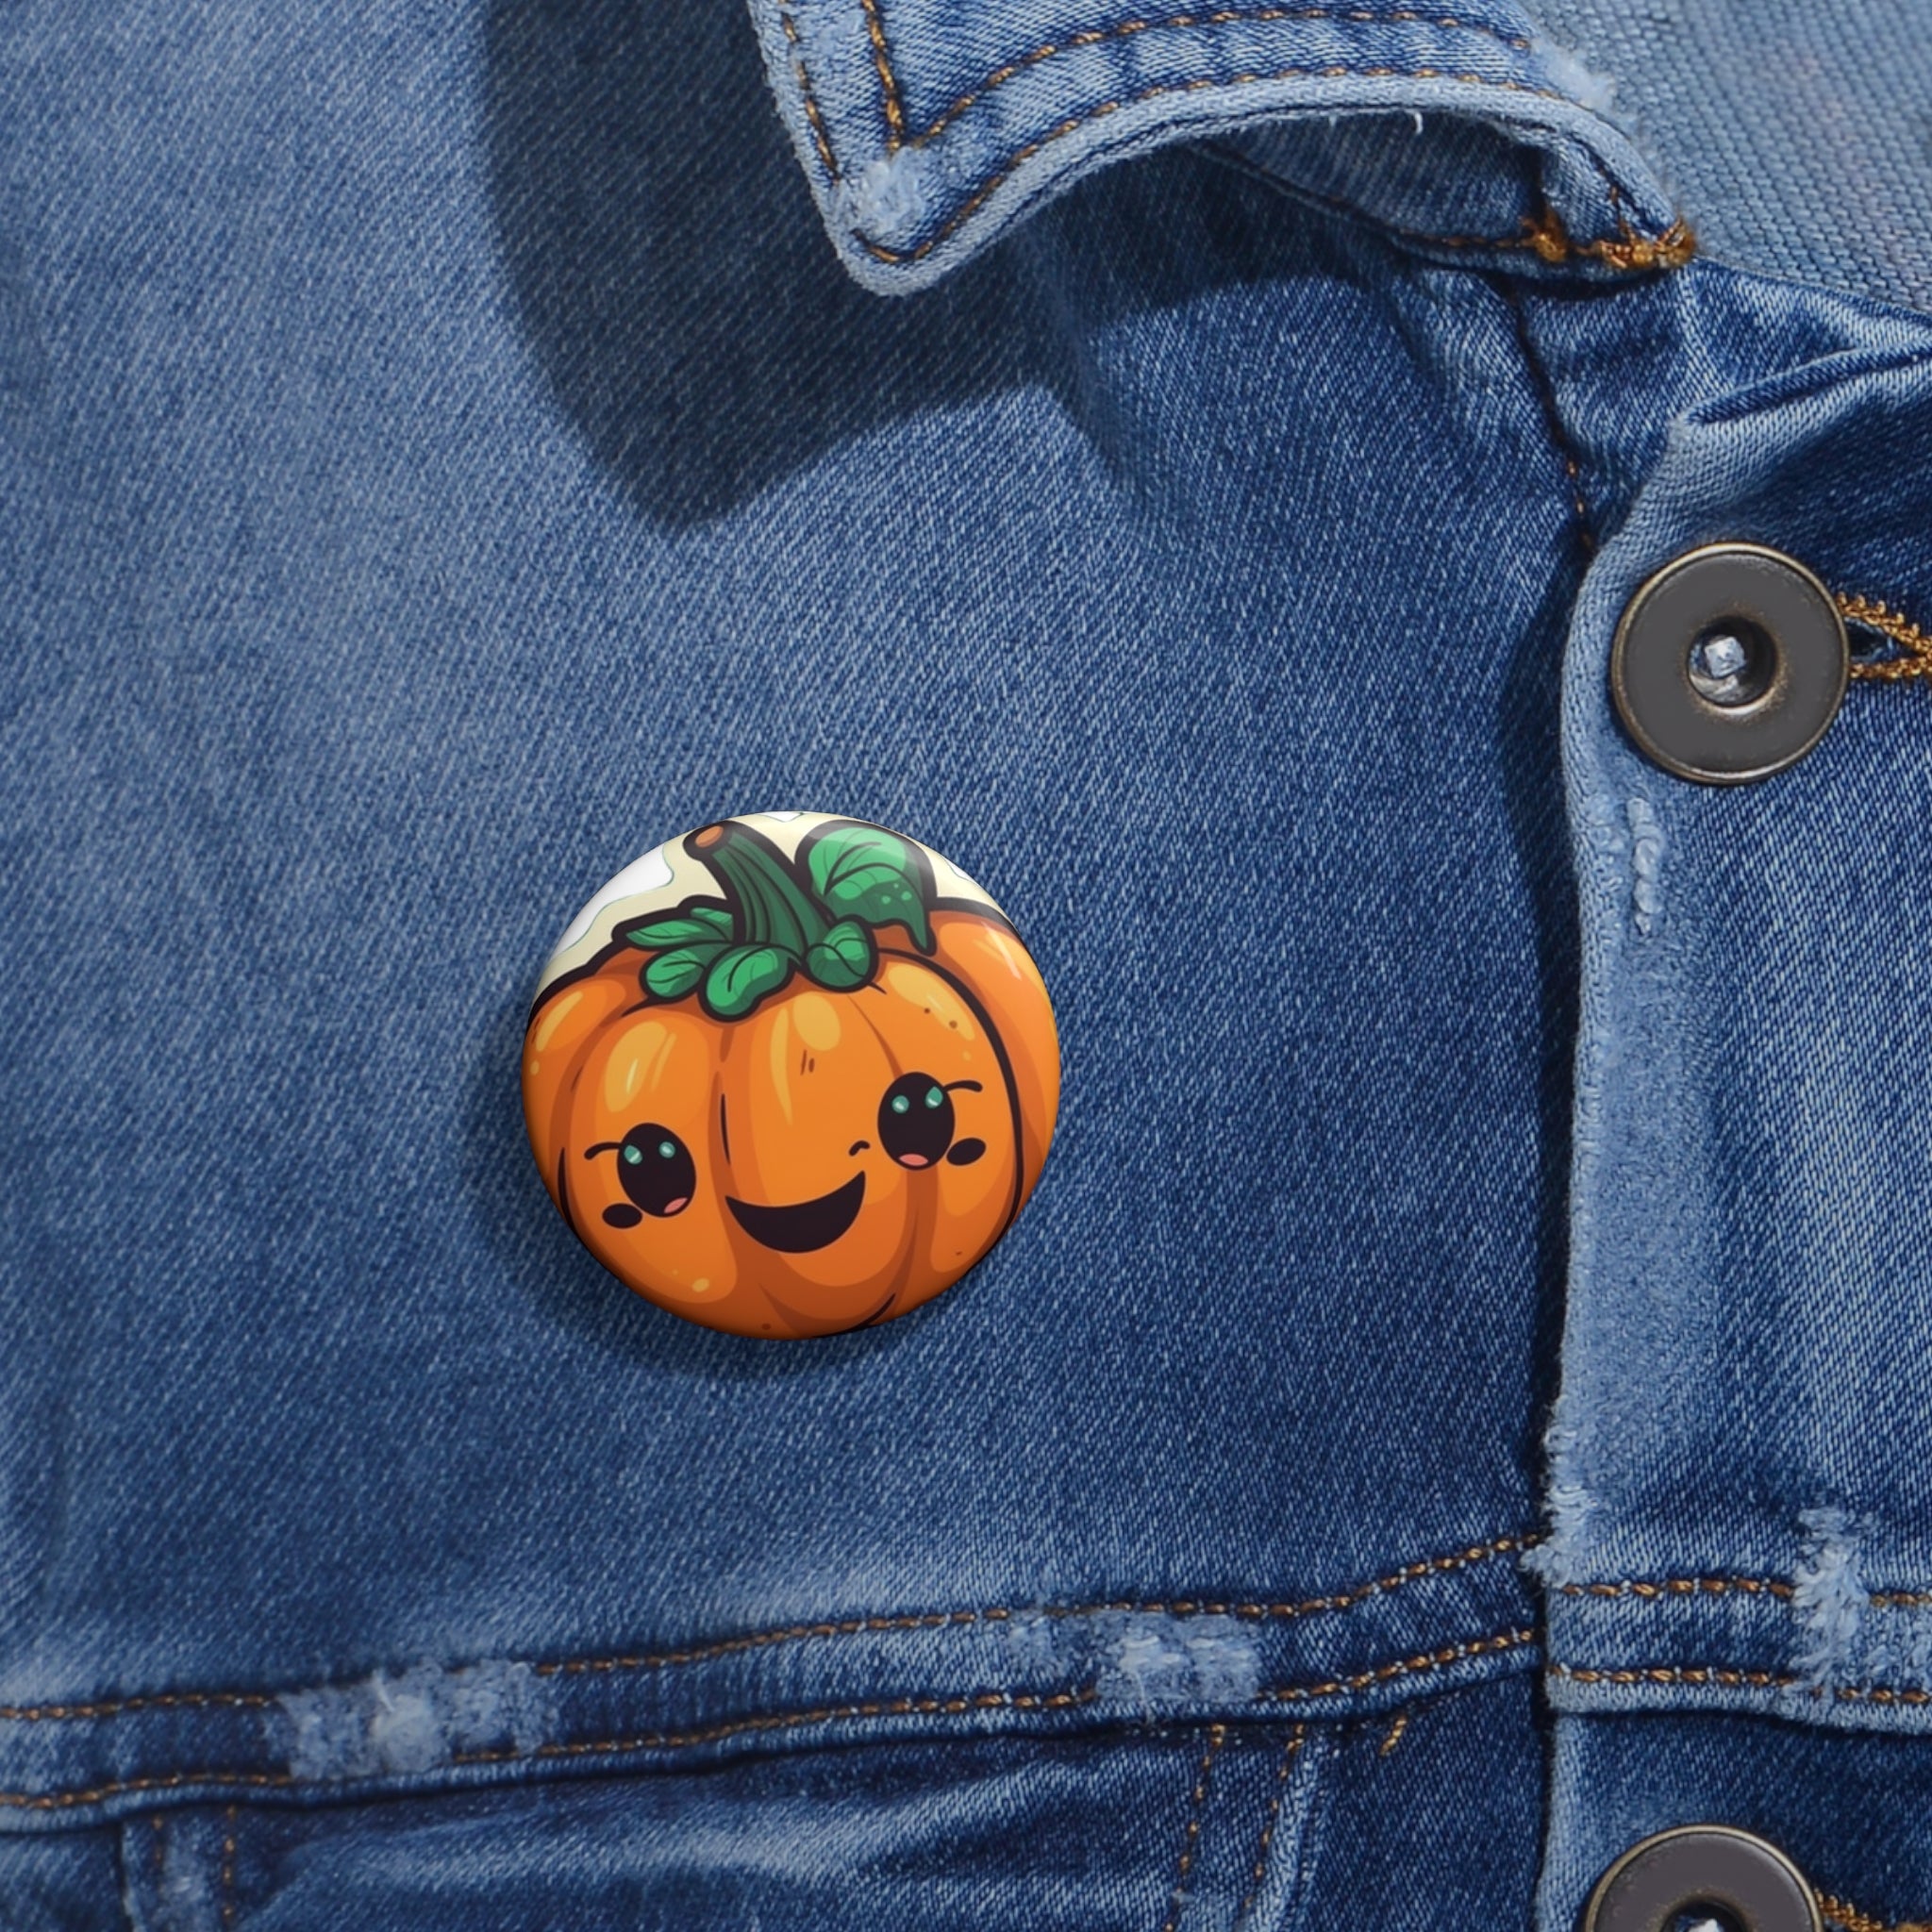 Custom Pin Buttons - Pumpkin